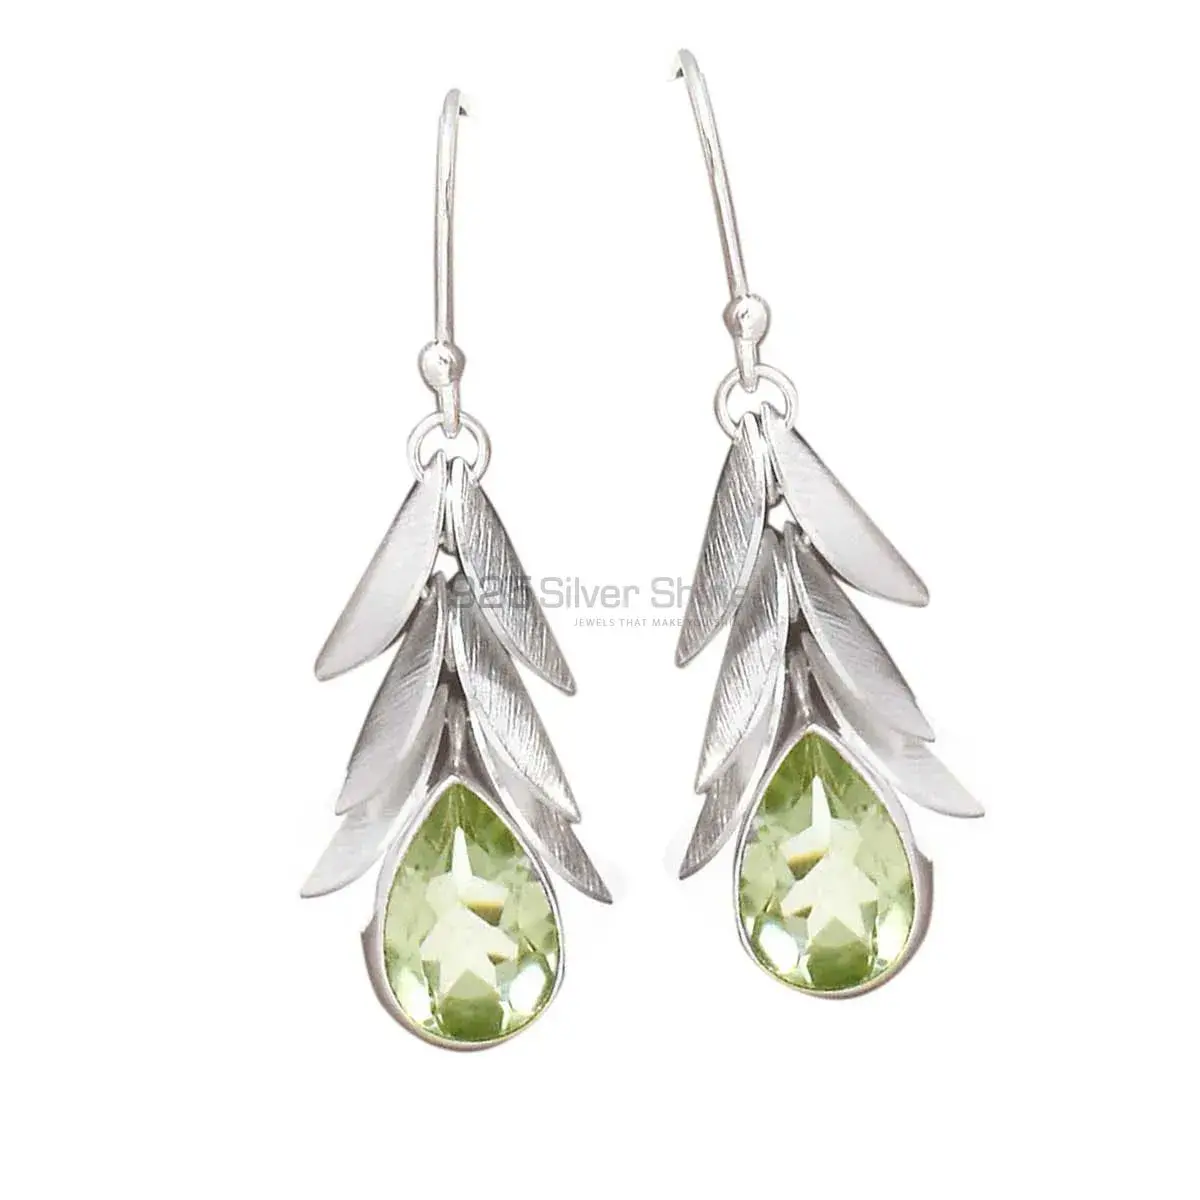 925 Sterling Silver Handmade Earrings Suppliers In Green Amethyst Gemstone Jewelry 925SE3016